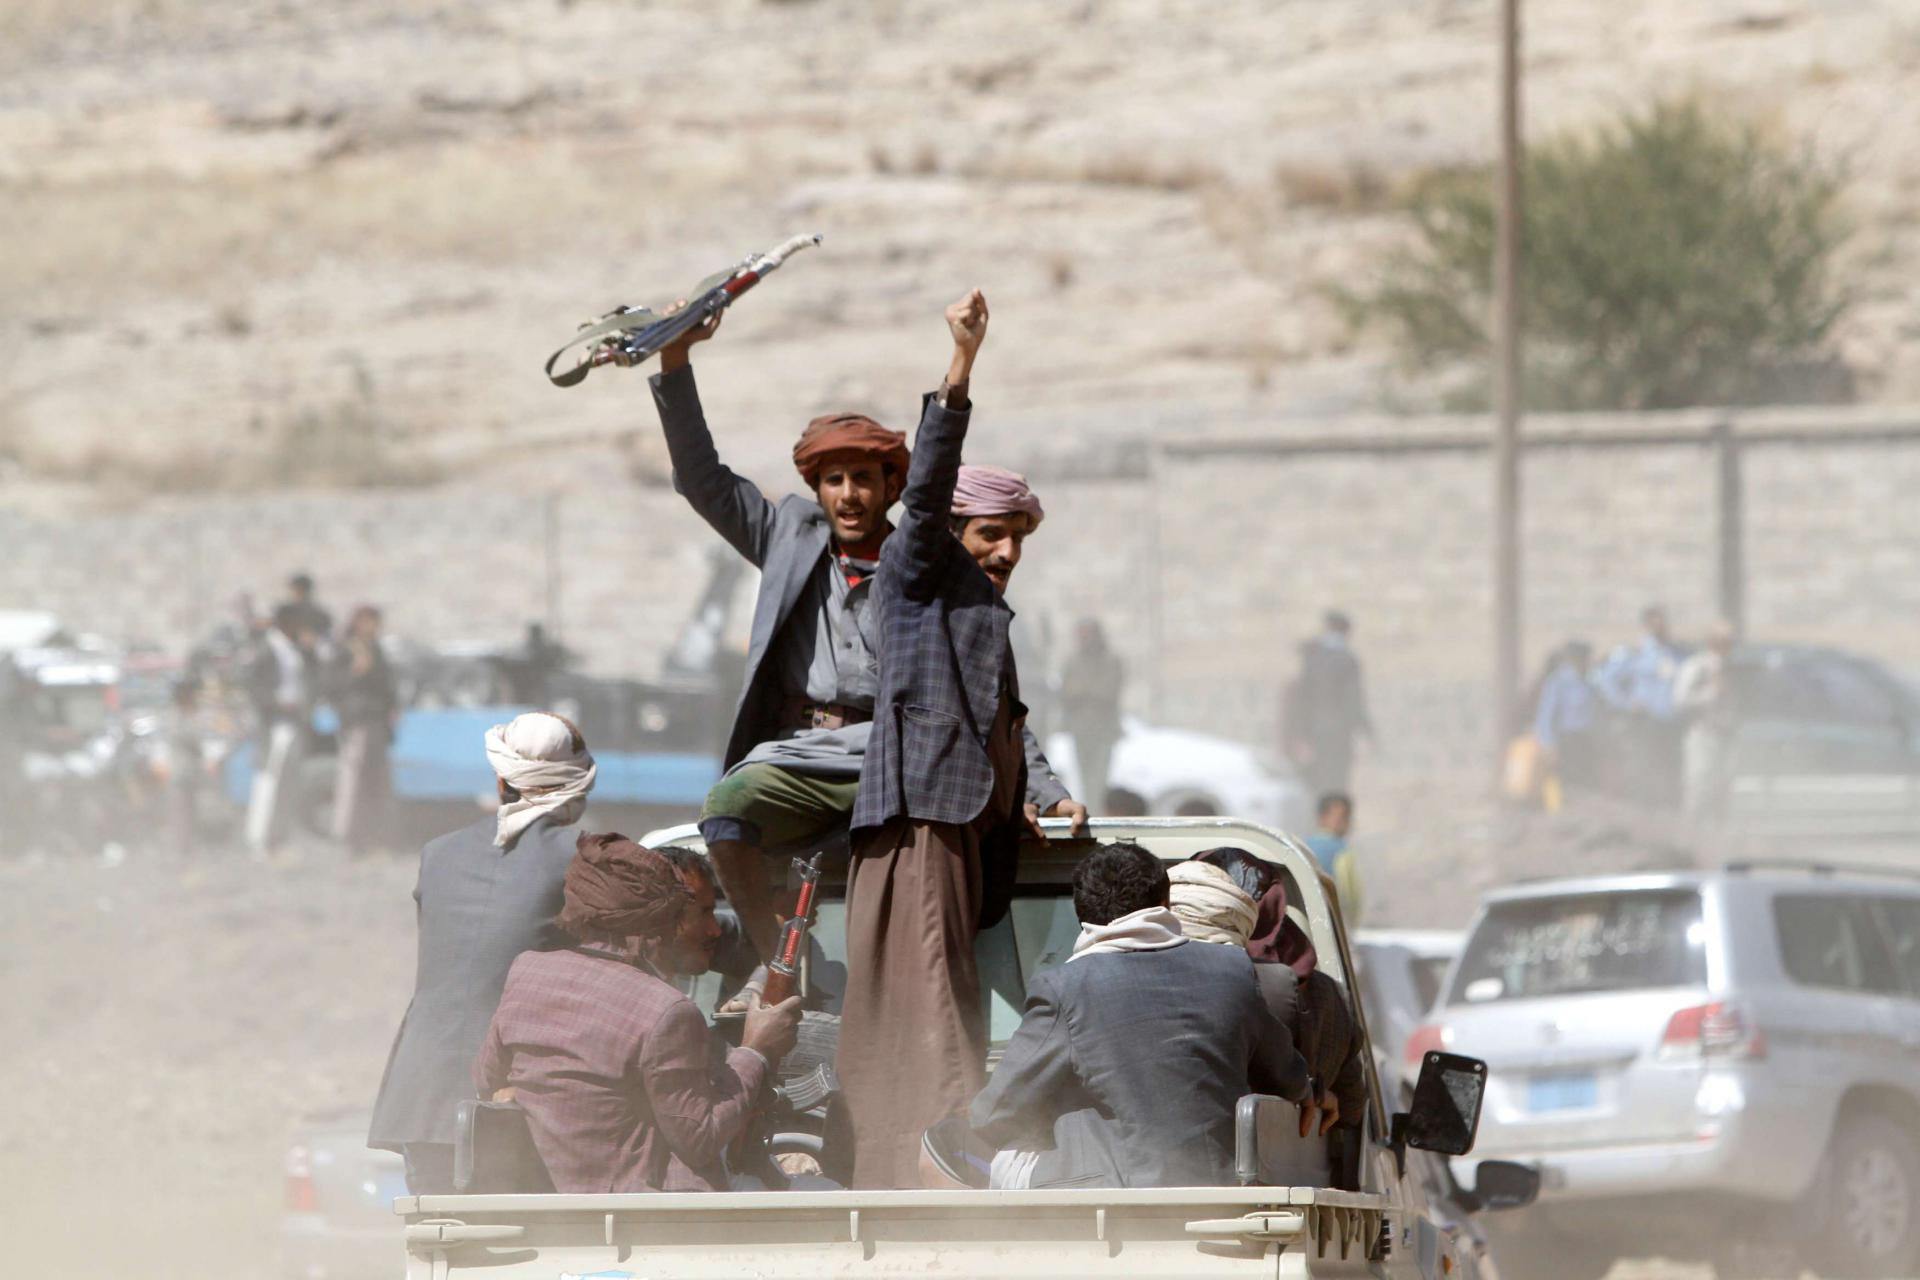 الحوثيون يناورون باستعداد للسلام فيما يحشدون عسكريا لاستمرار القتال